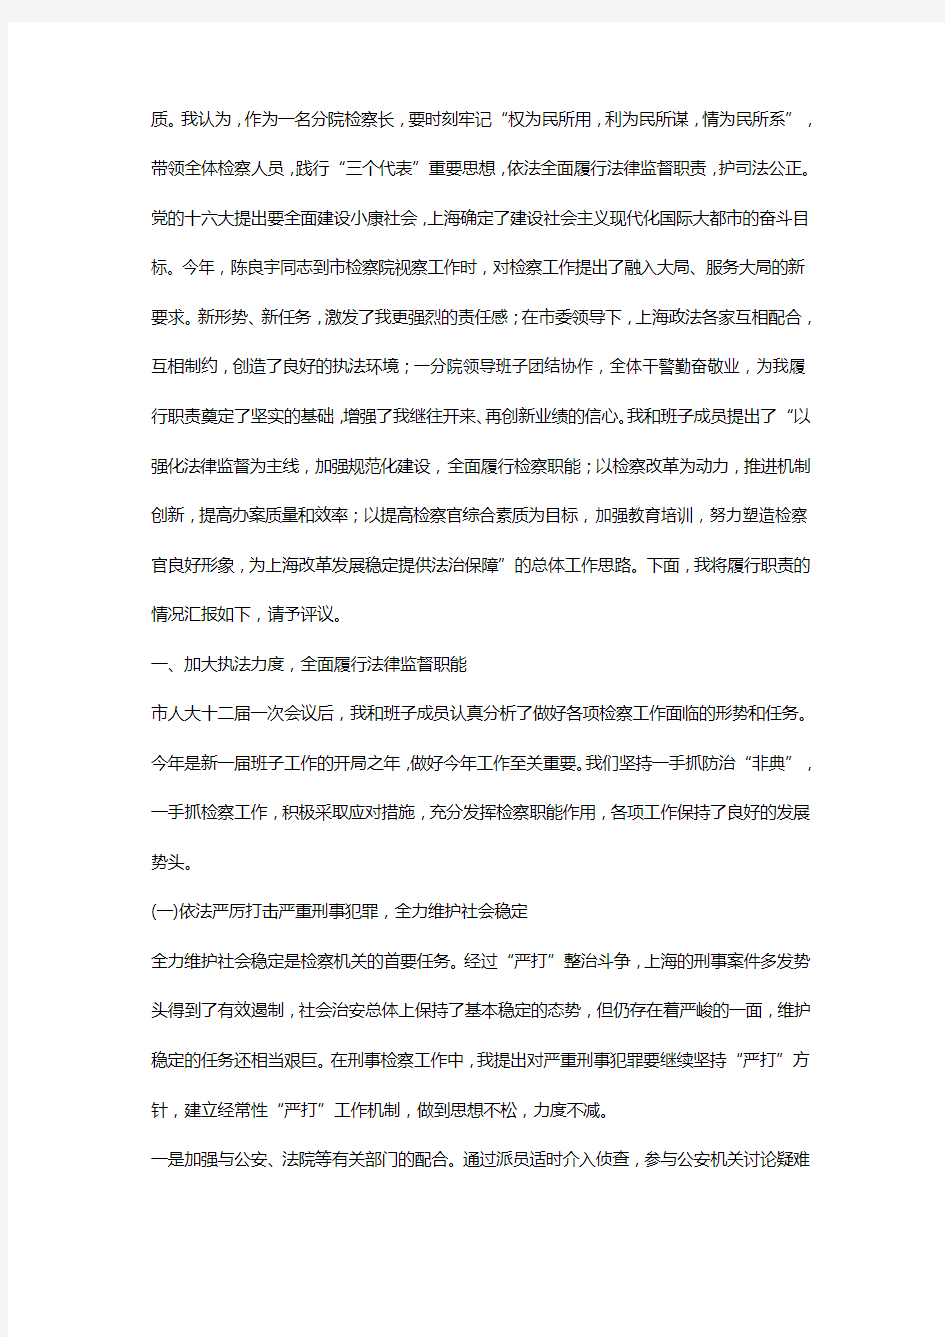 市检察院分院检察长述职报告_上海市检察院第一分院检察长